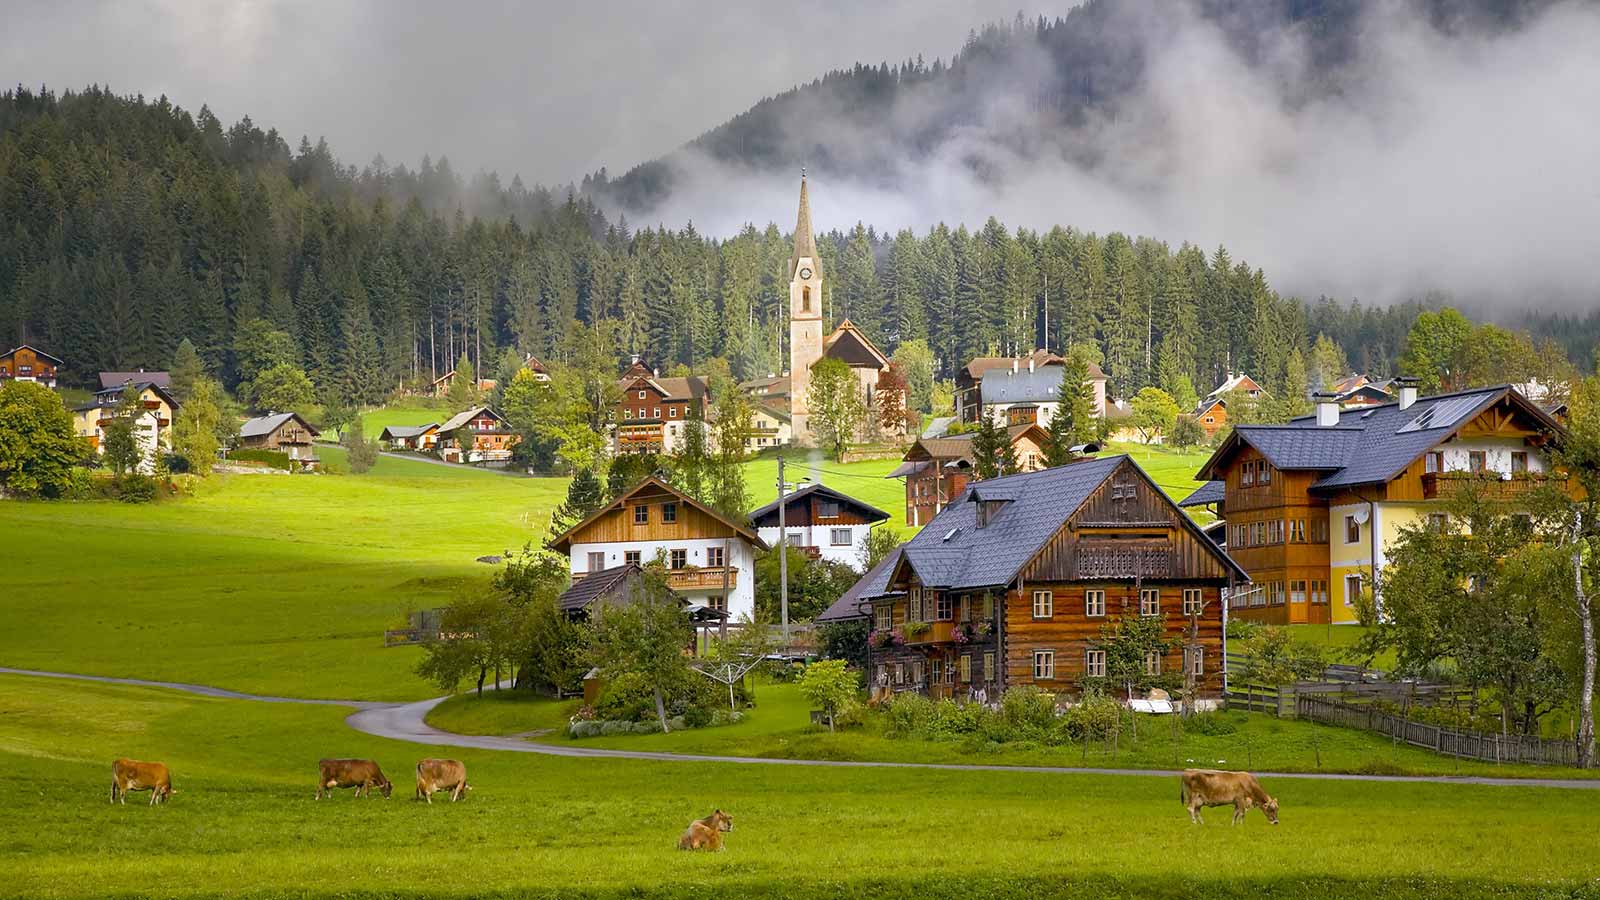 gosau-village-austria-avstriya